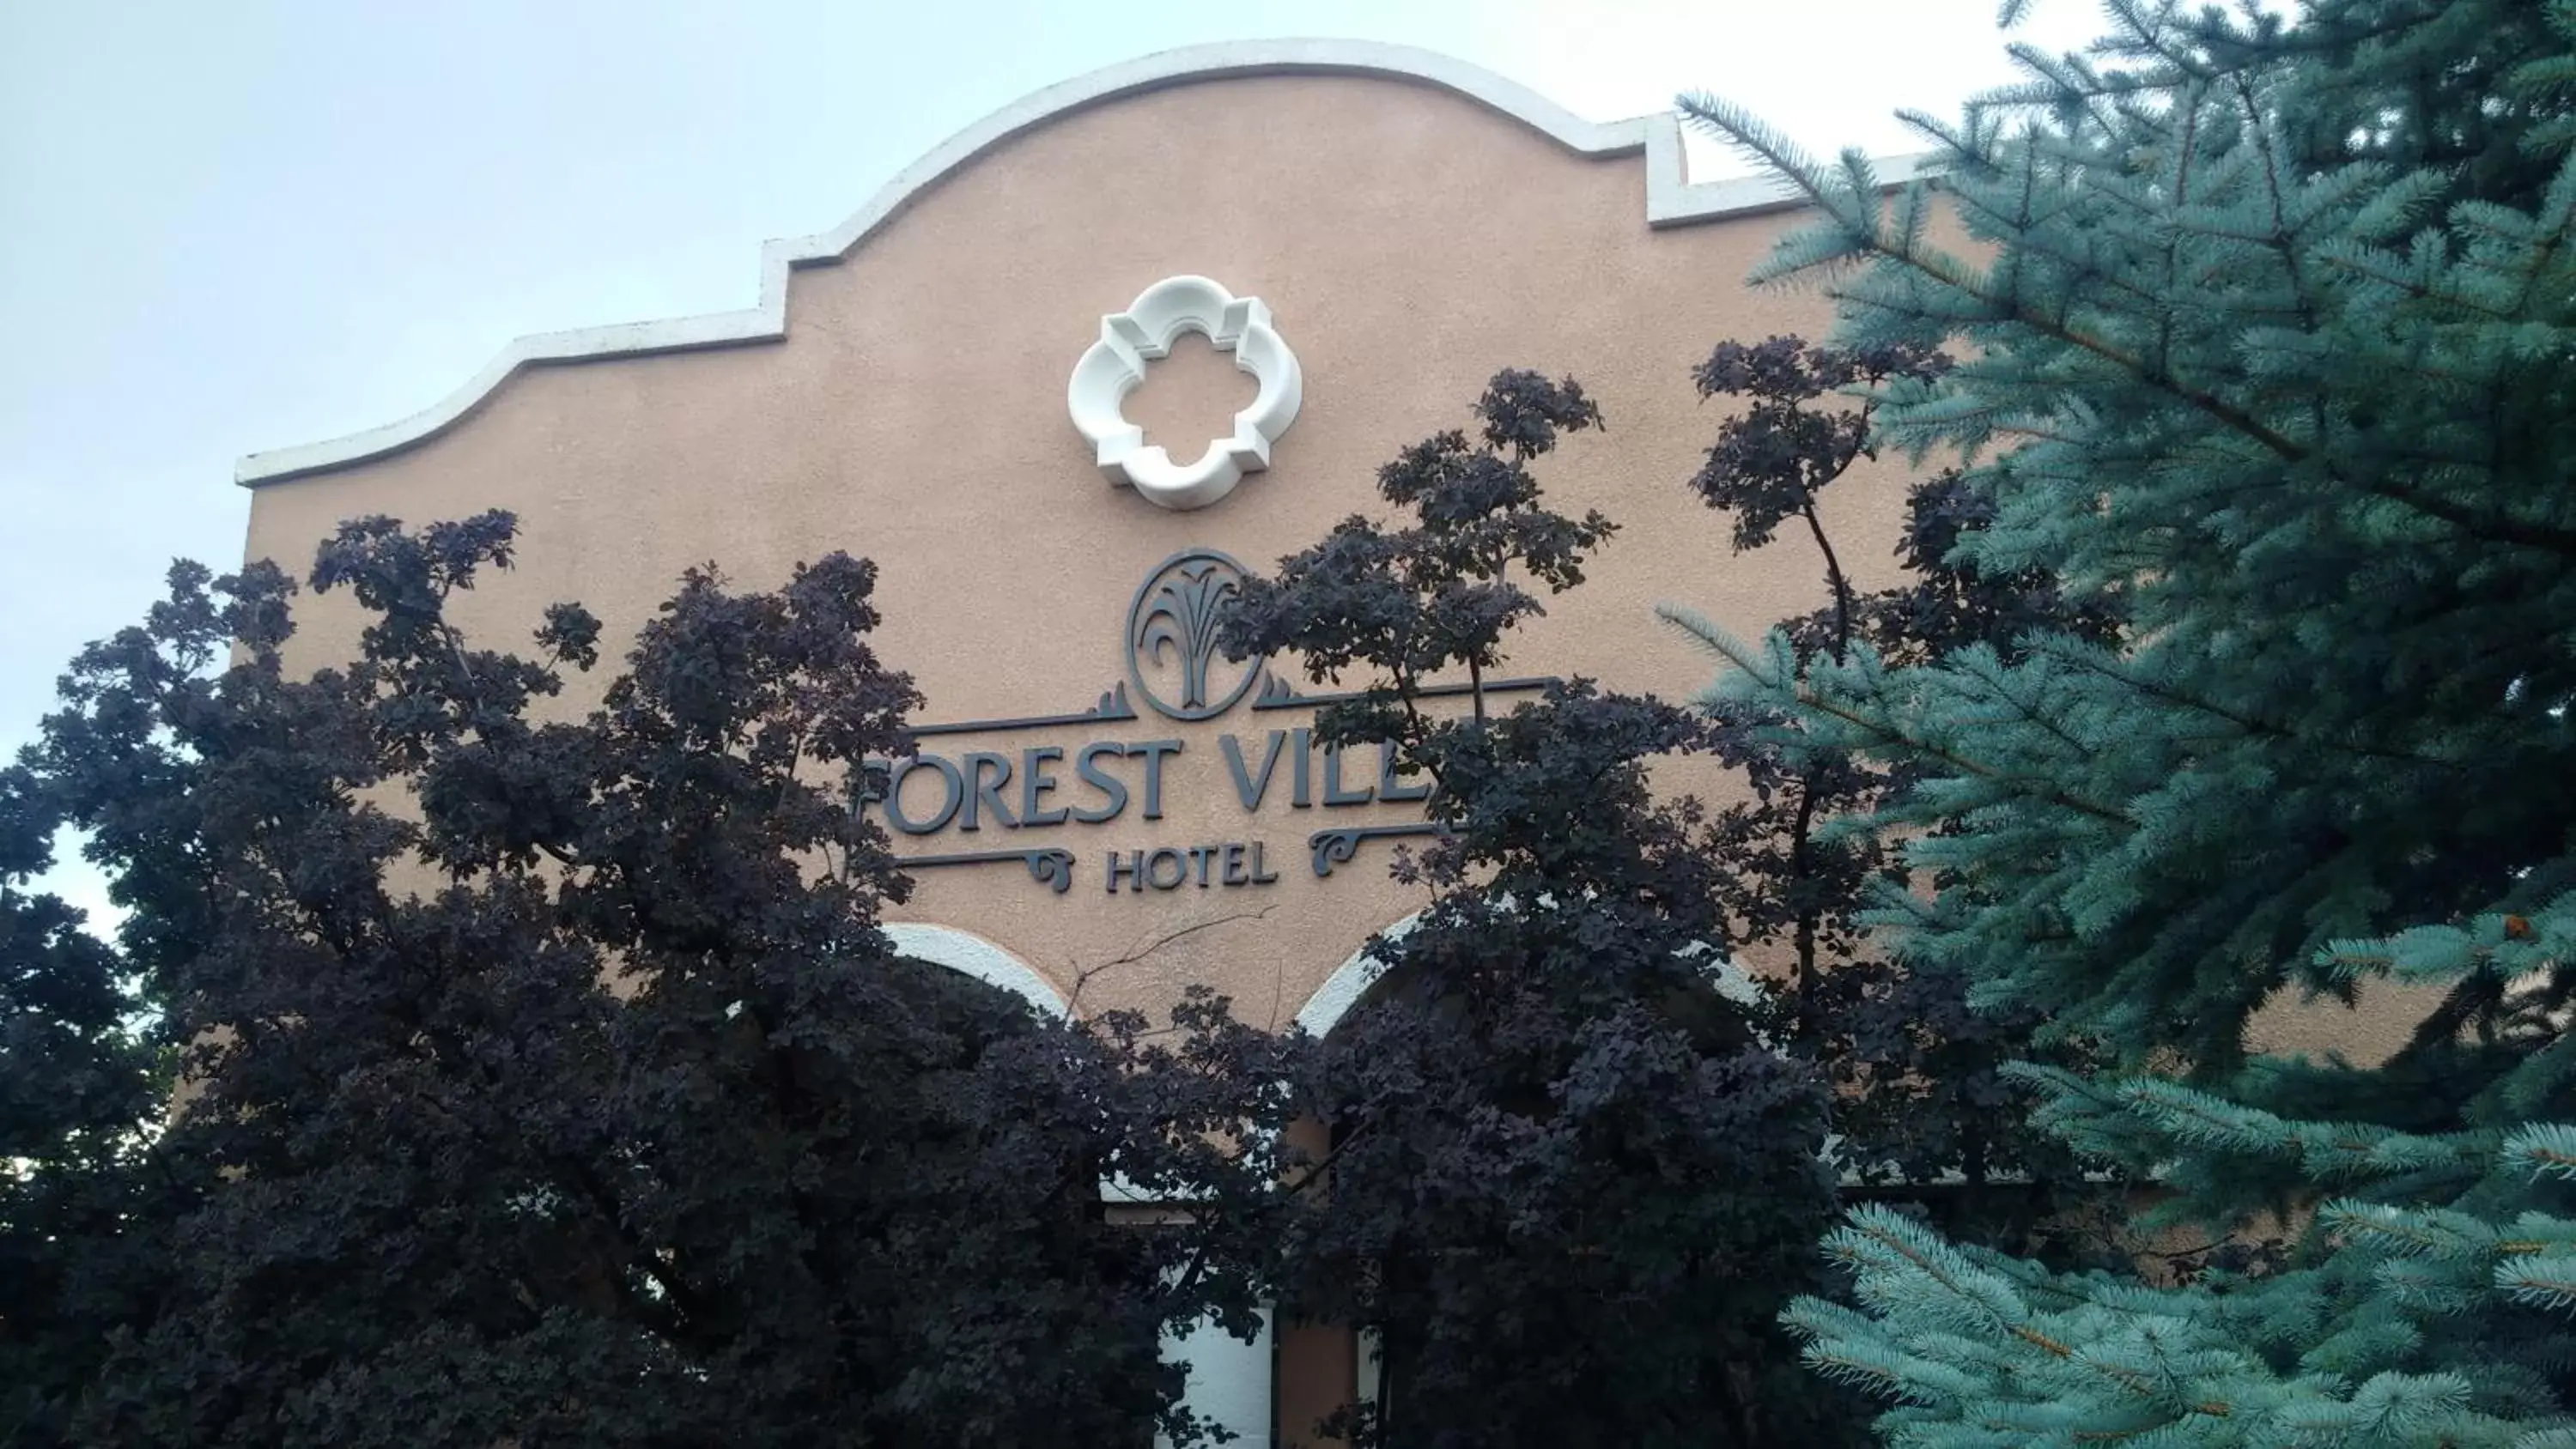 Facade/entrance, Property Building in Forest Villas Hotel